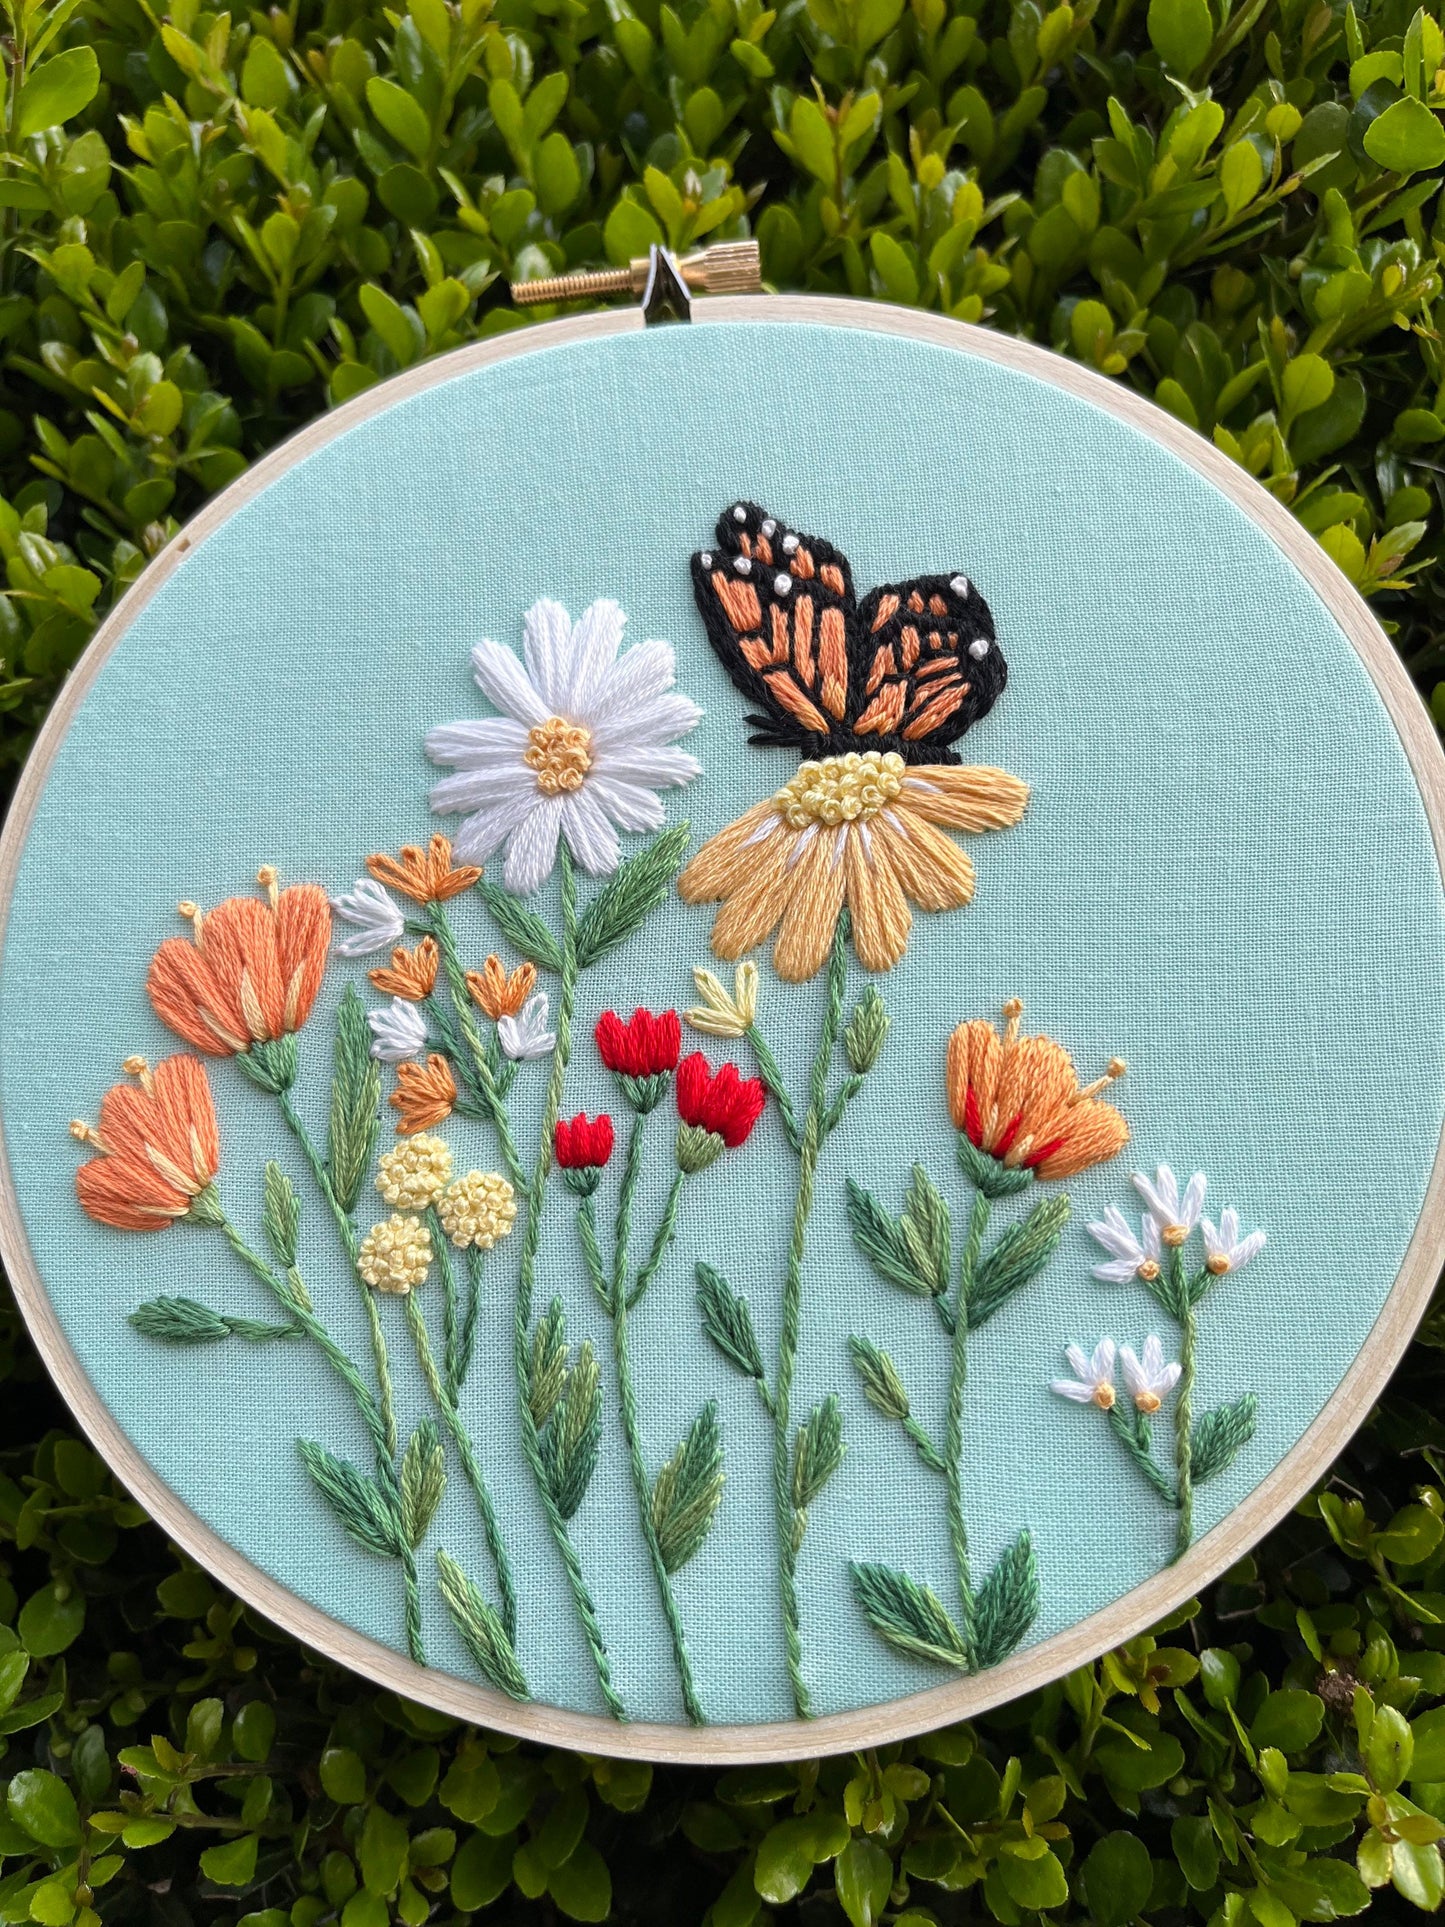 PDF Pattern - Monarch Meadow, Beginner/Intermediate Embroidery Pattern